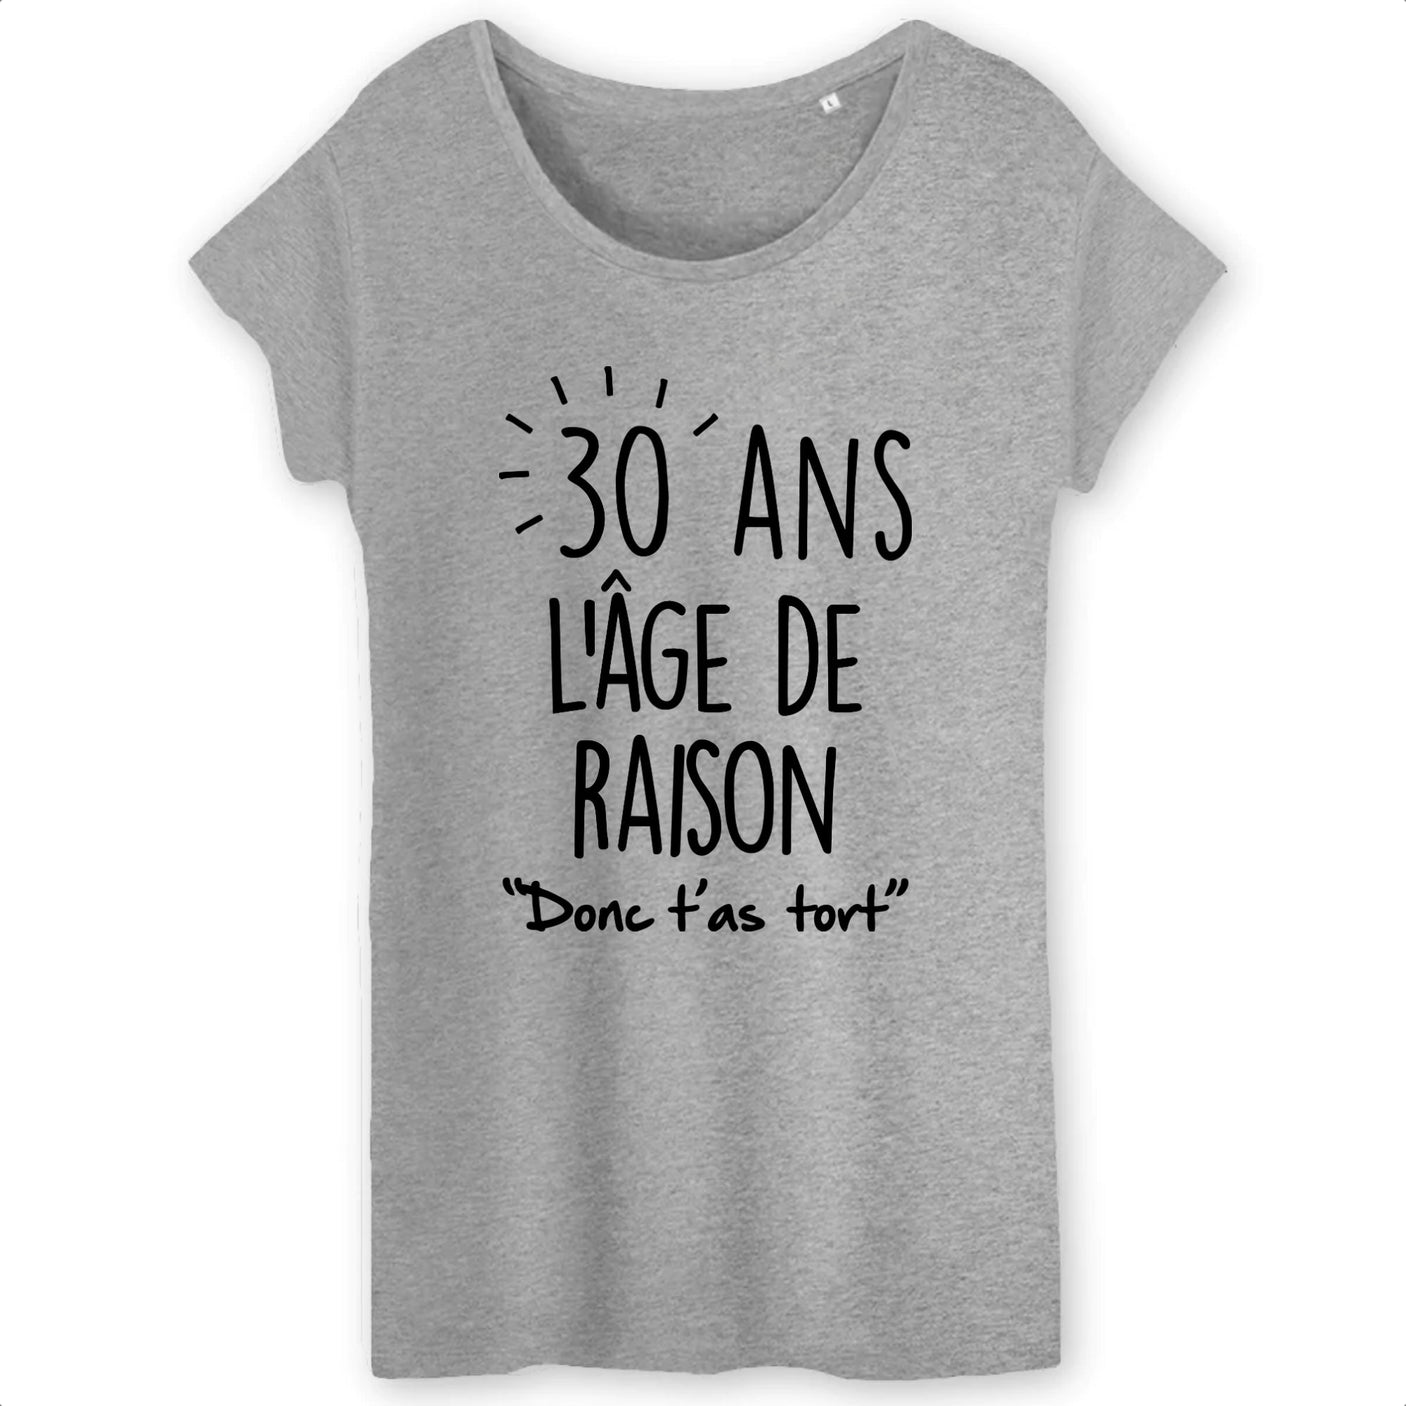 30 ANS anniversaire humour' T-shirt Femme